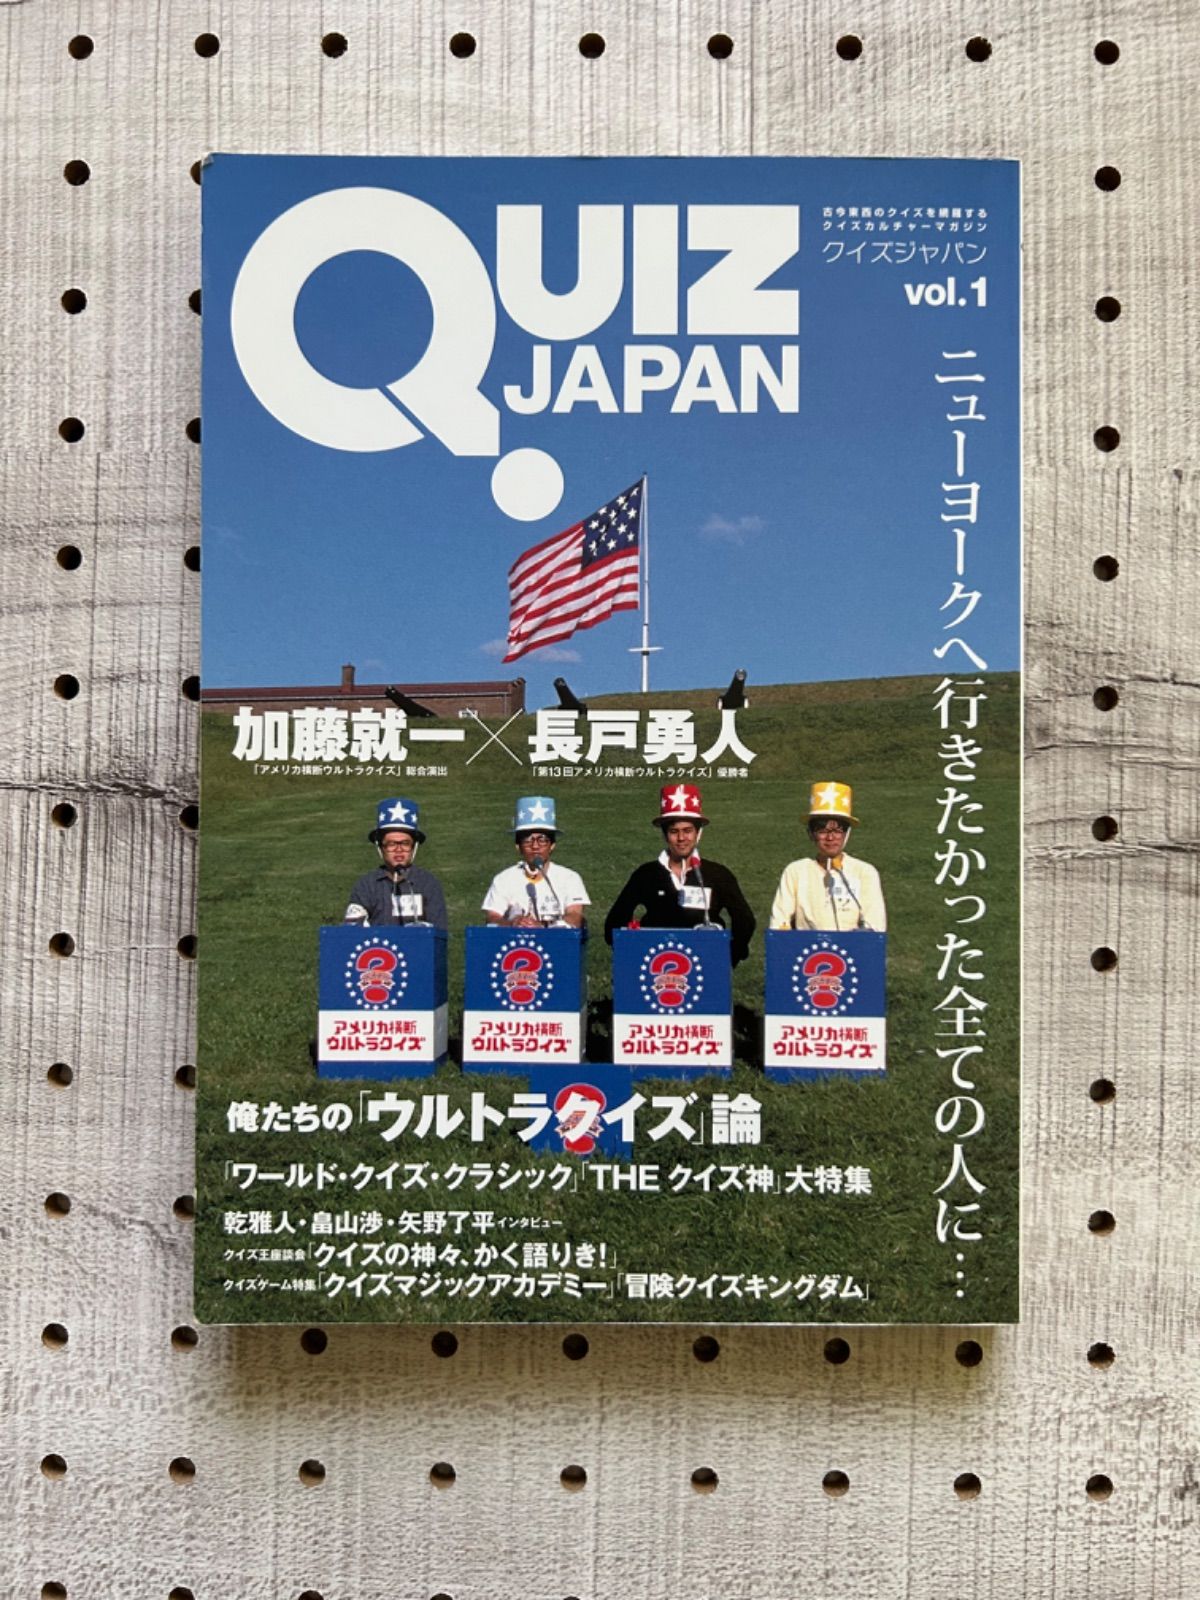 価格は安く QUIZ JAPAN 加藤就一 vol.1 (その他) QUIZ クイズジャパン 